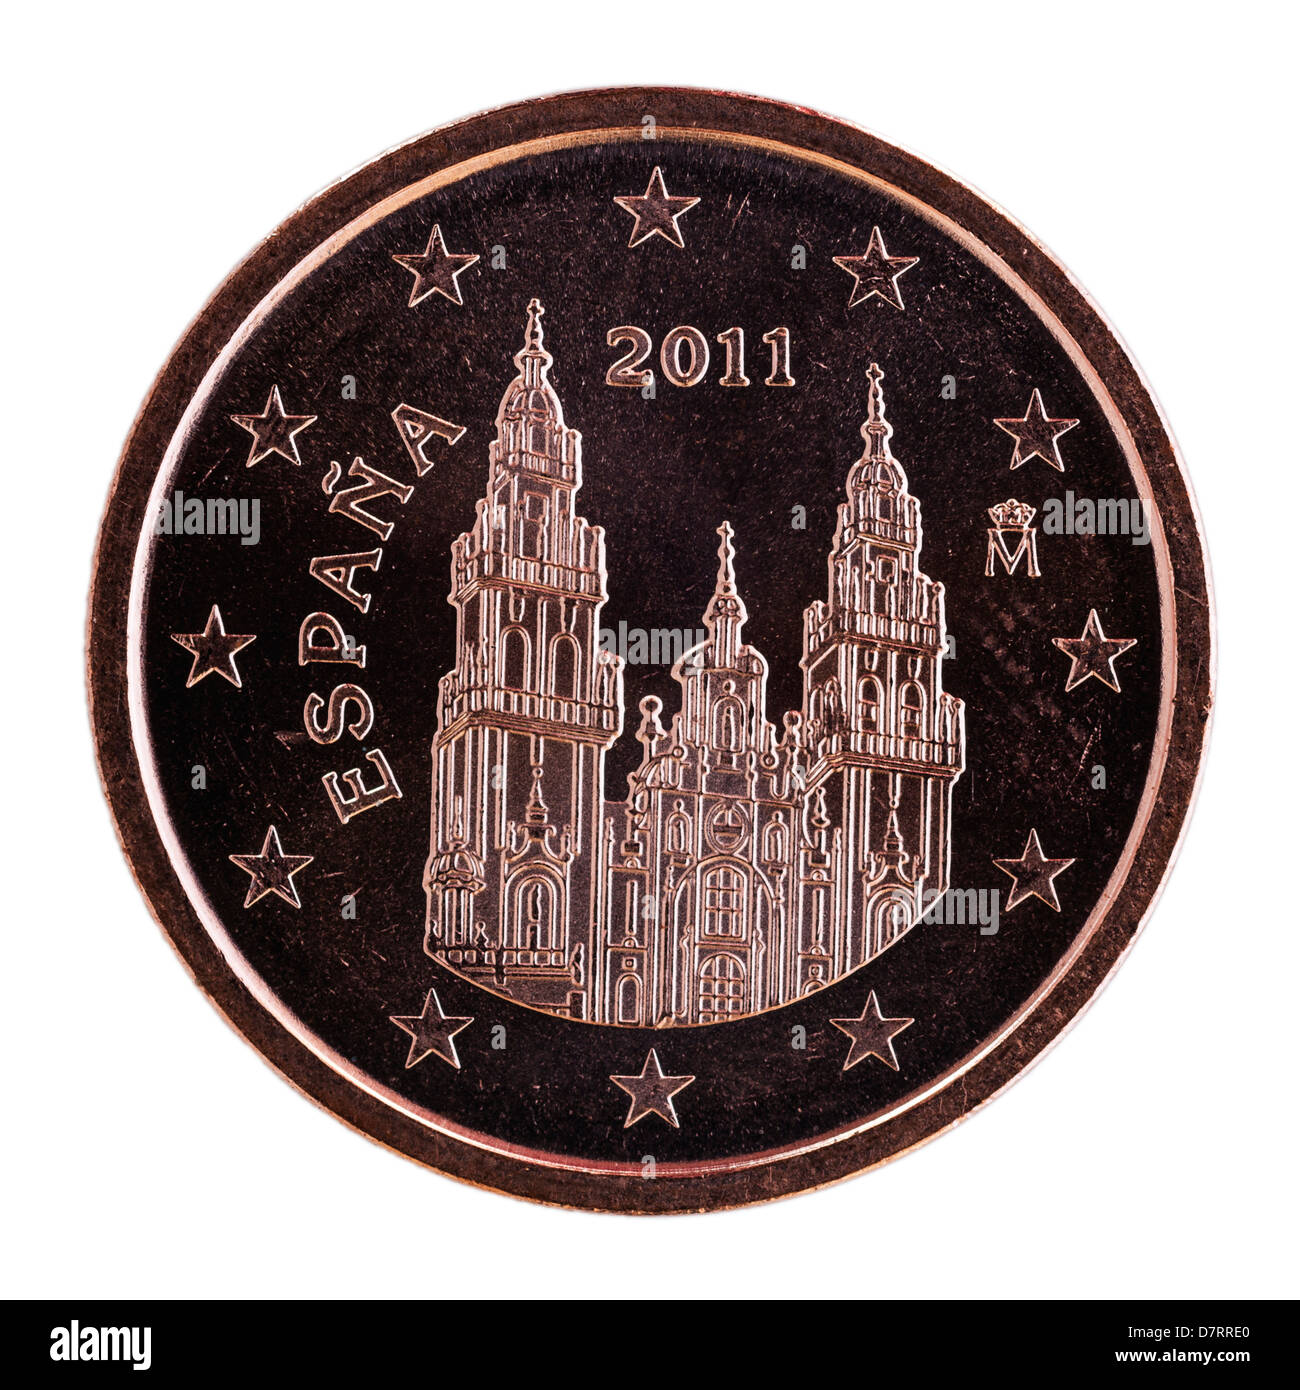 Einen spanischen Euro-2-Cent-Münze auf weißem Hintergrund Stockfoto